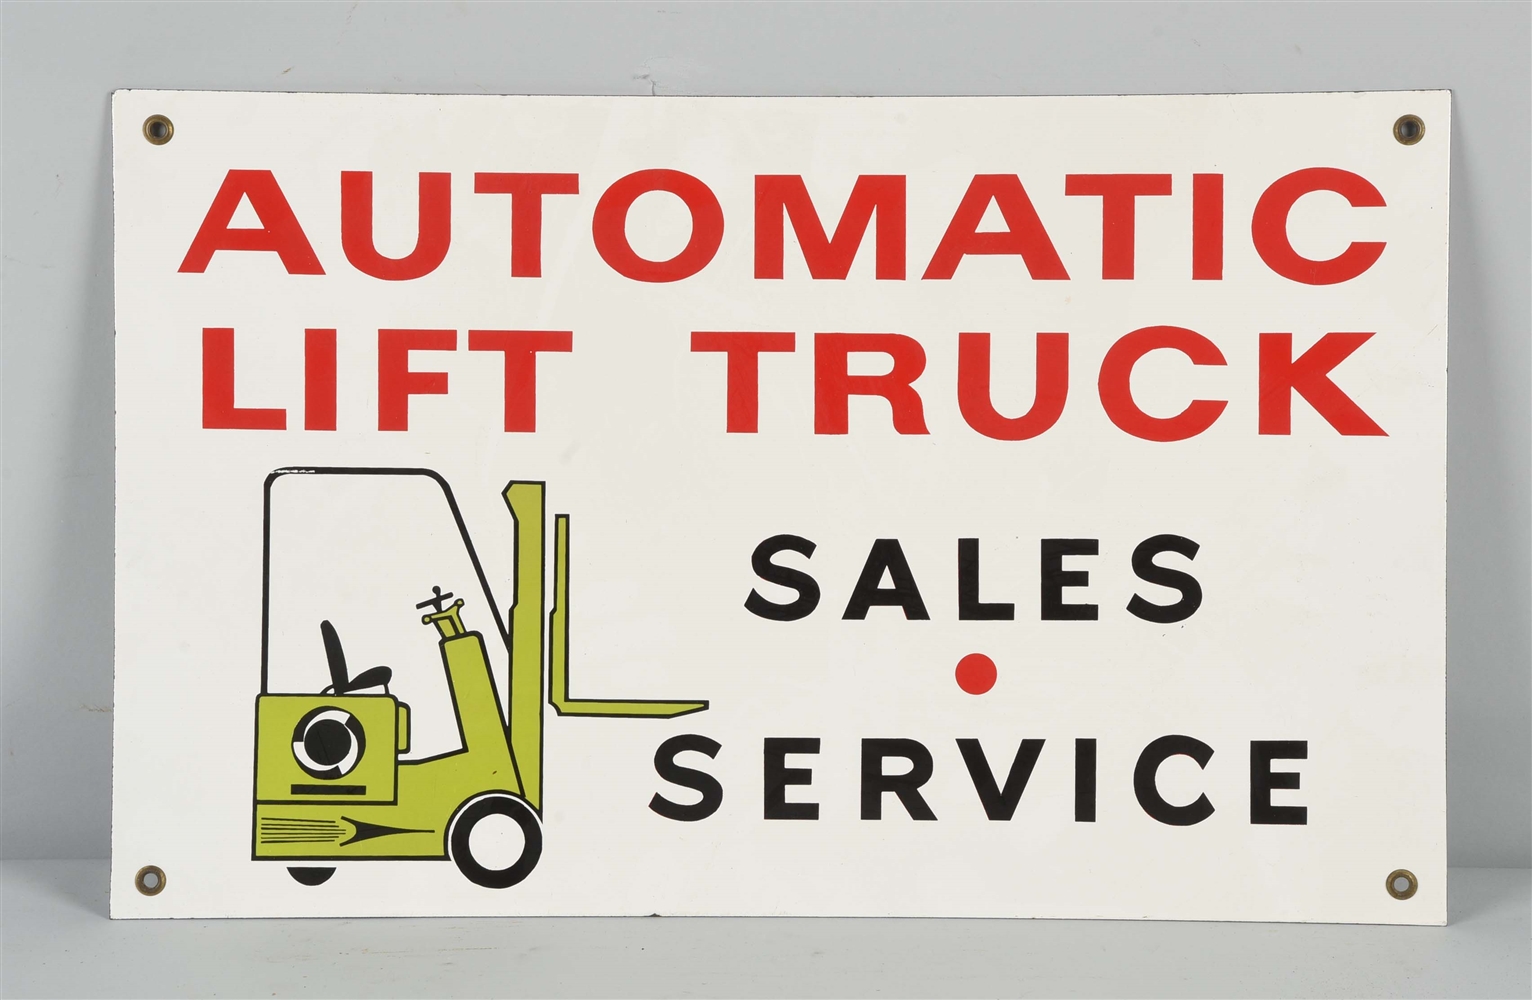 AUTOMATIC LIFT TRUCK SALES-SERVICE PORCELAIN SIGN.